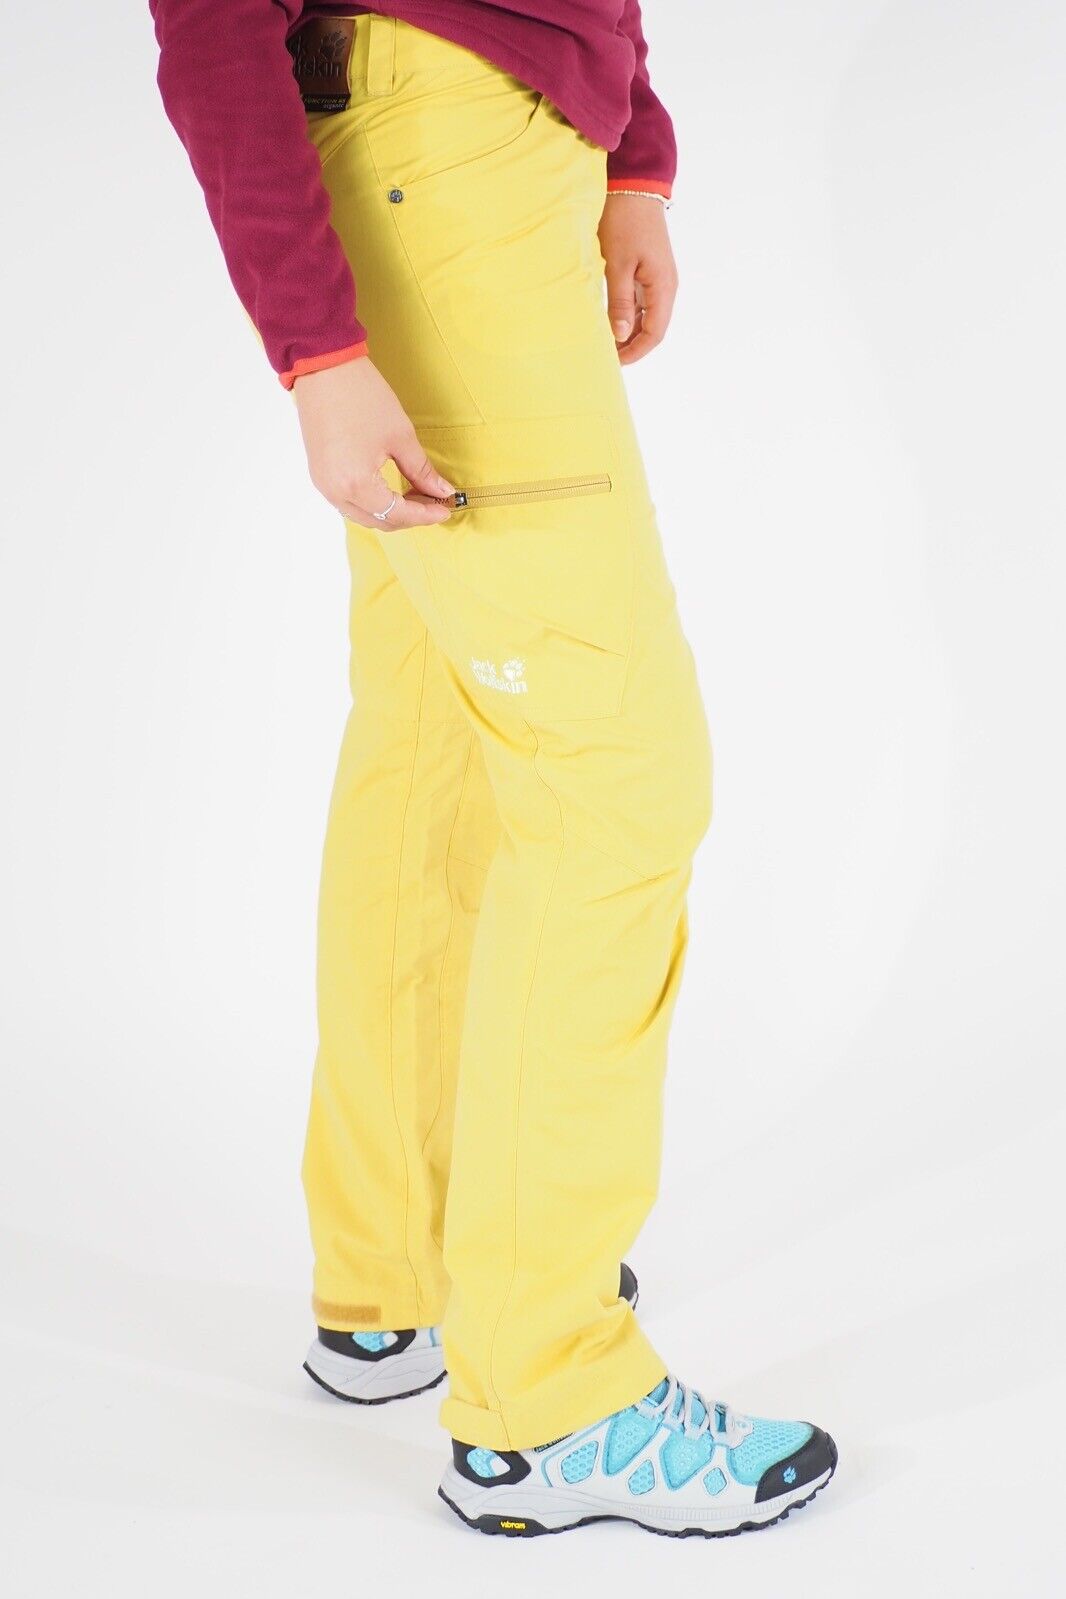 Womens Jack Wolfskin Evo 1502821 Yellow Moss Warm Windproof Hiking Trousers